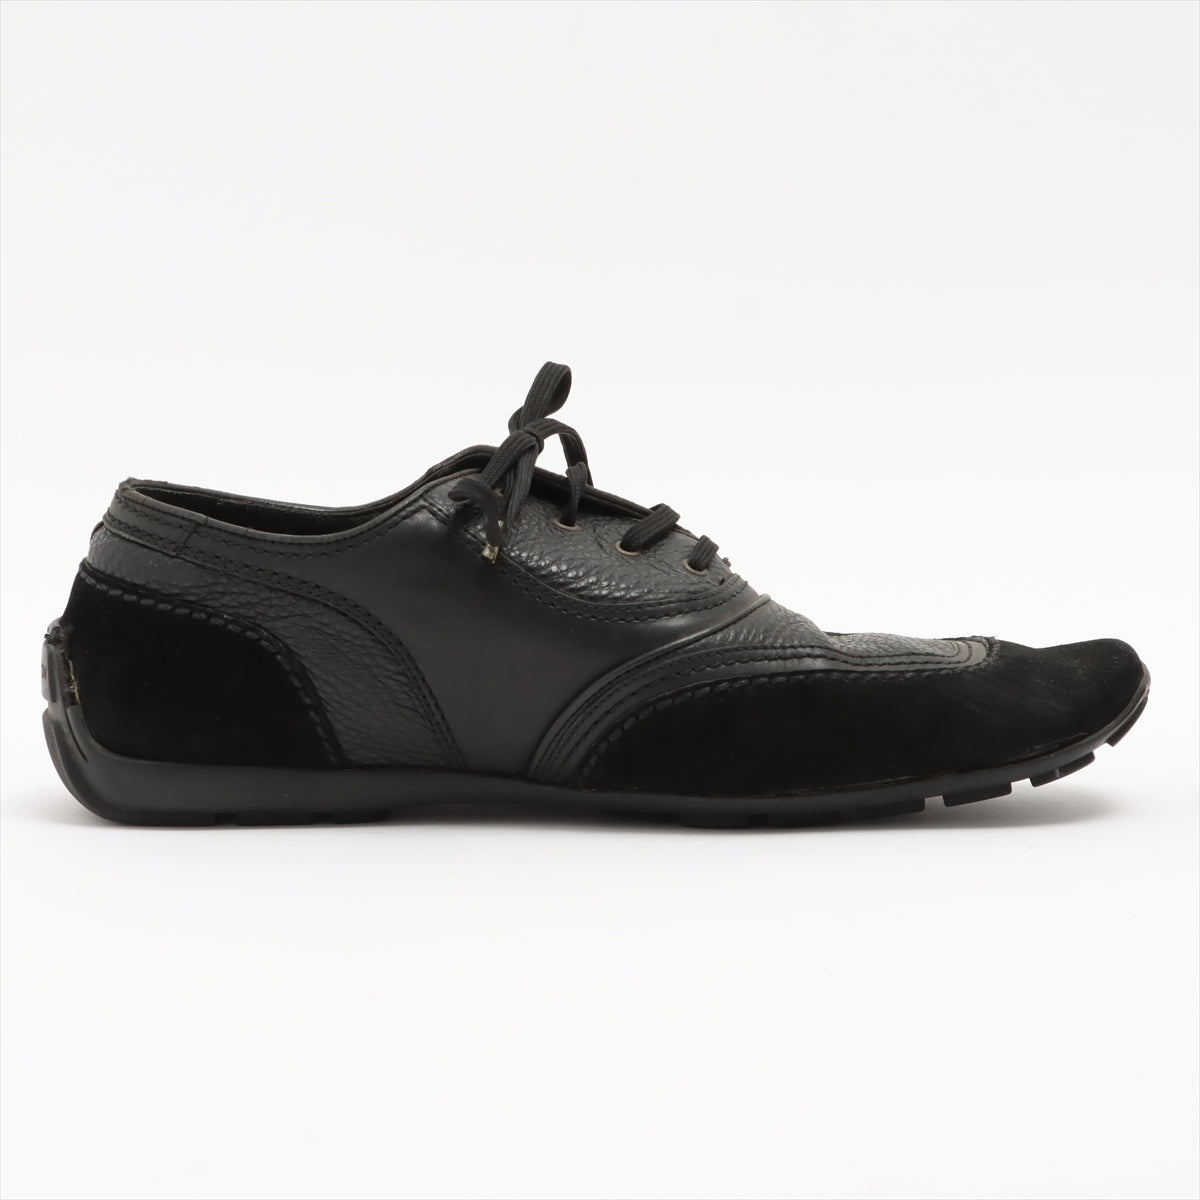 Louis Vuitton 06 Leather & Suede Leather shoes 8 Men's Black FA0046